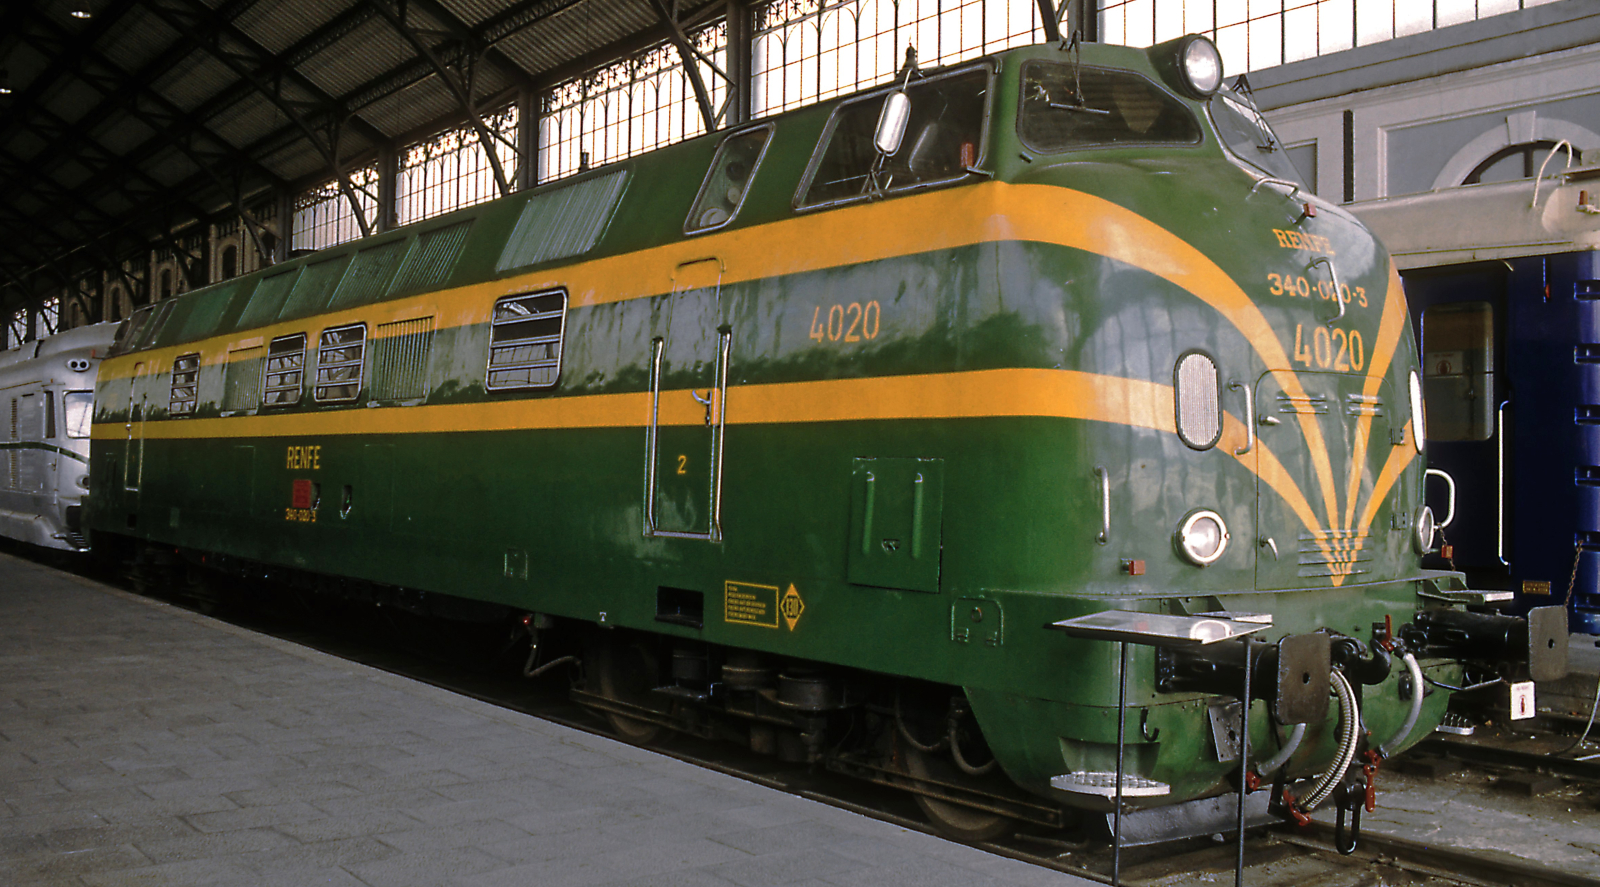 No. 4020 in the Madrid Delicias Railway Museum